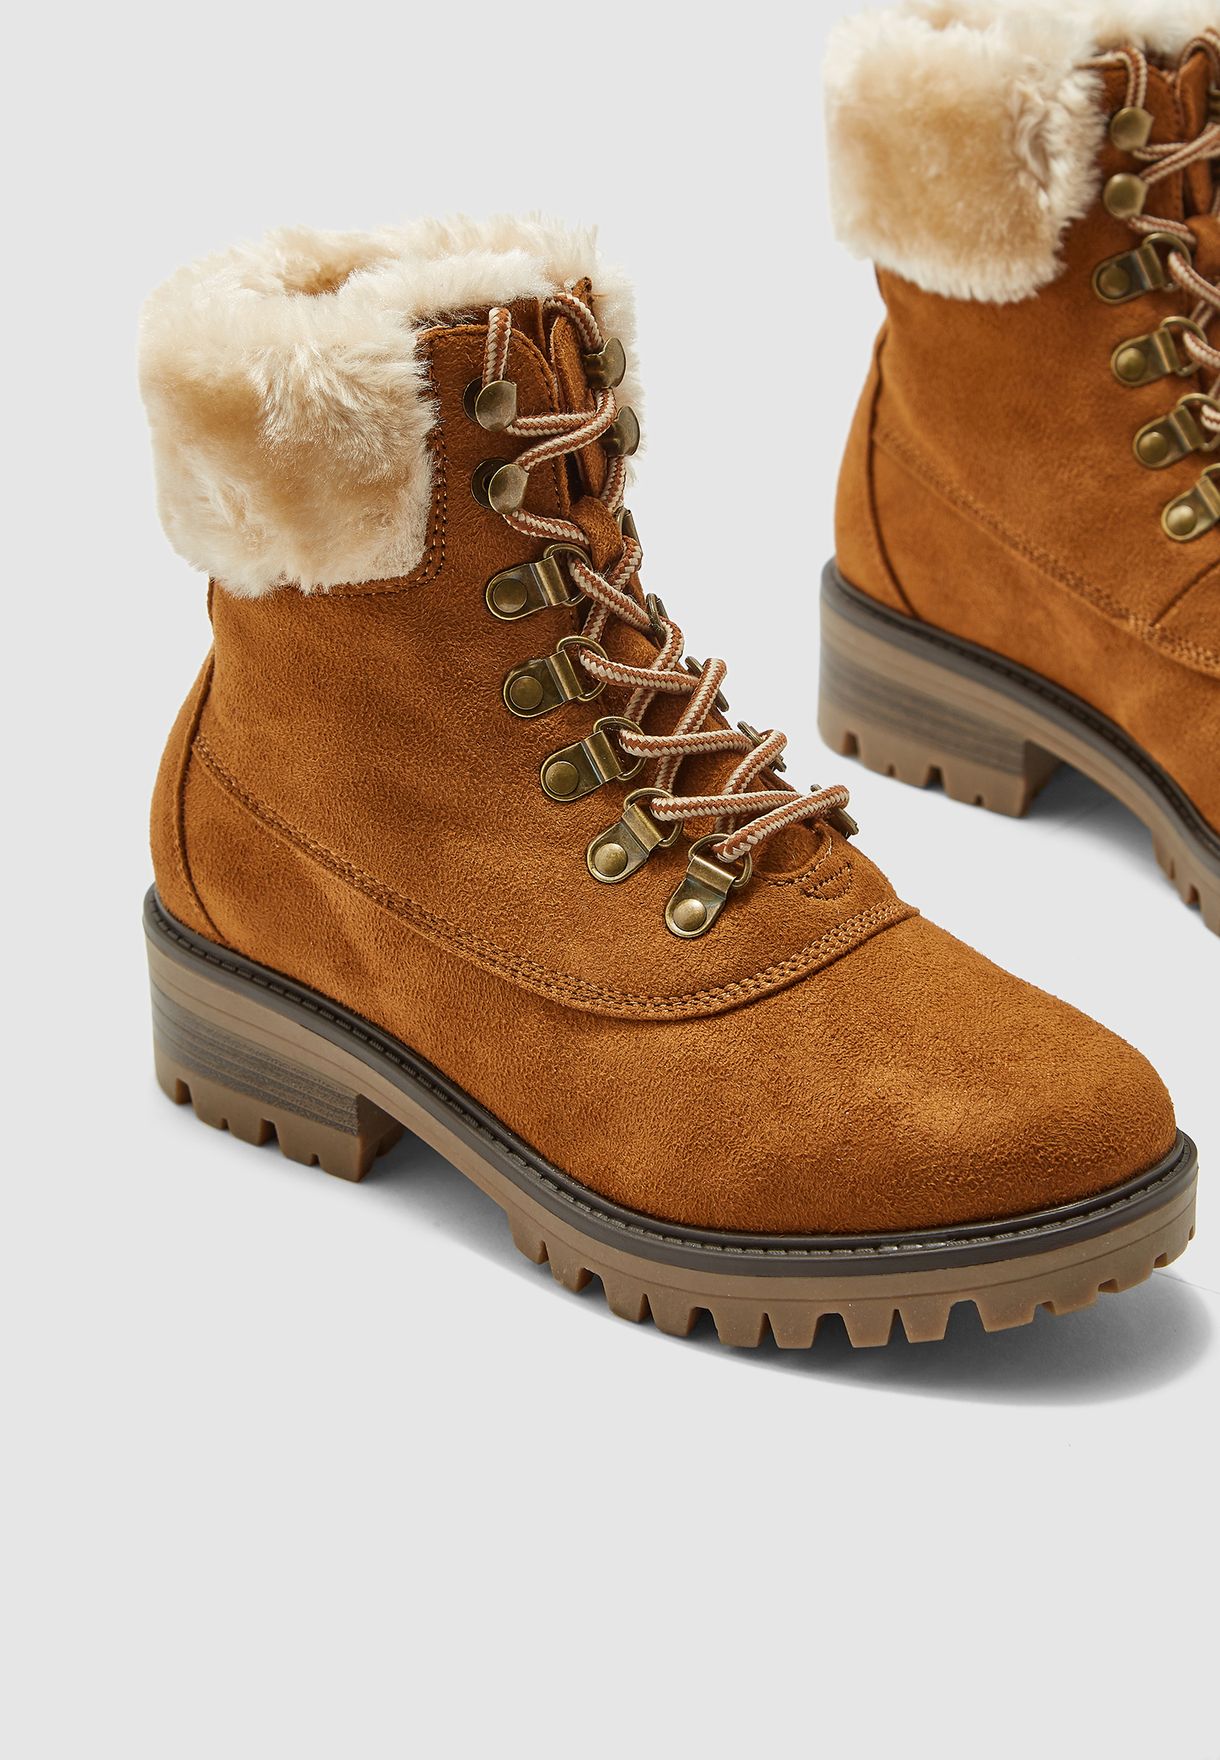 dorothy perkins hiker boots